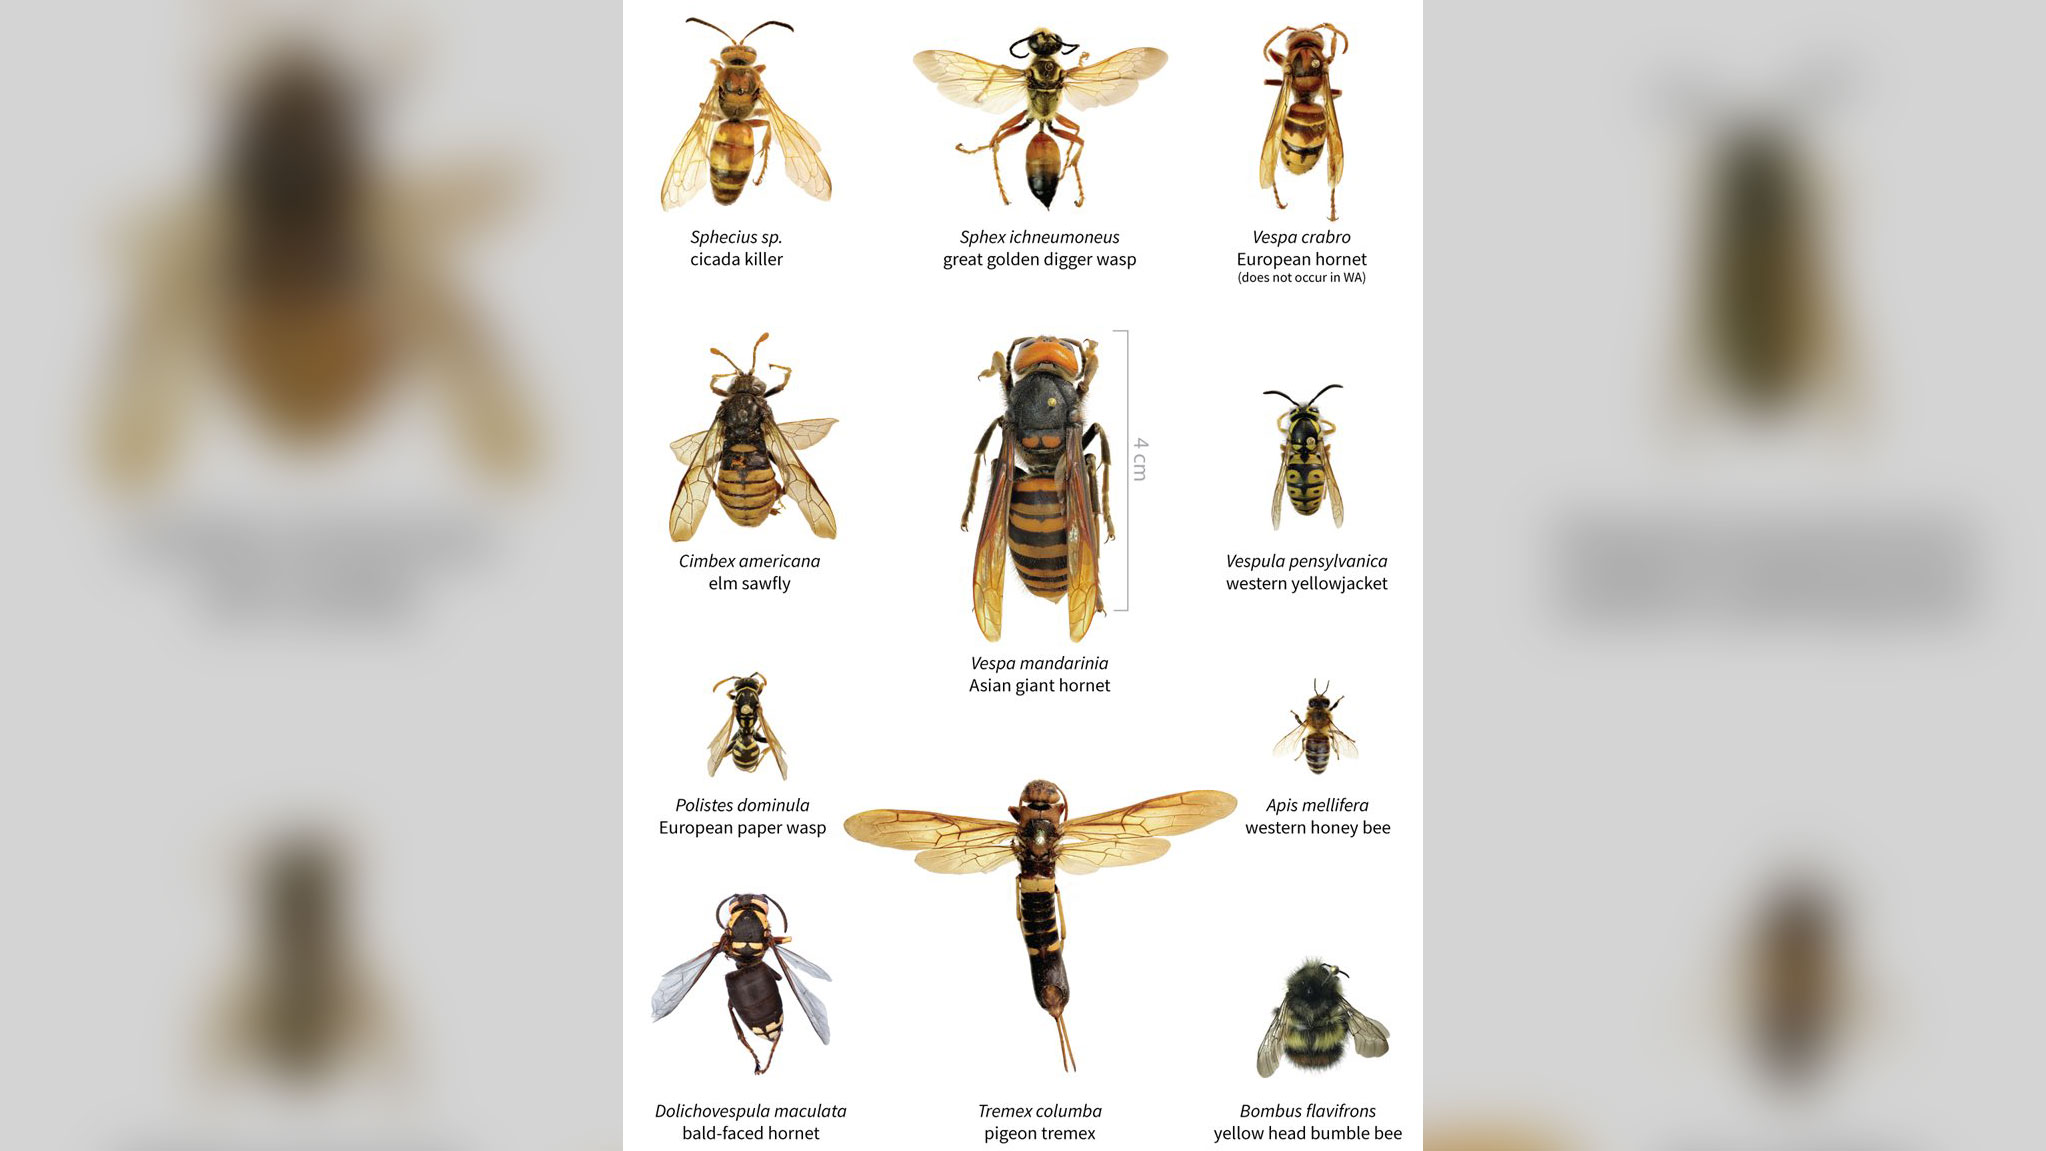 Comparação de tamanho entre a vespa gigante asiática e outros insetos